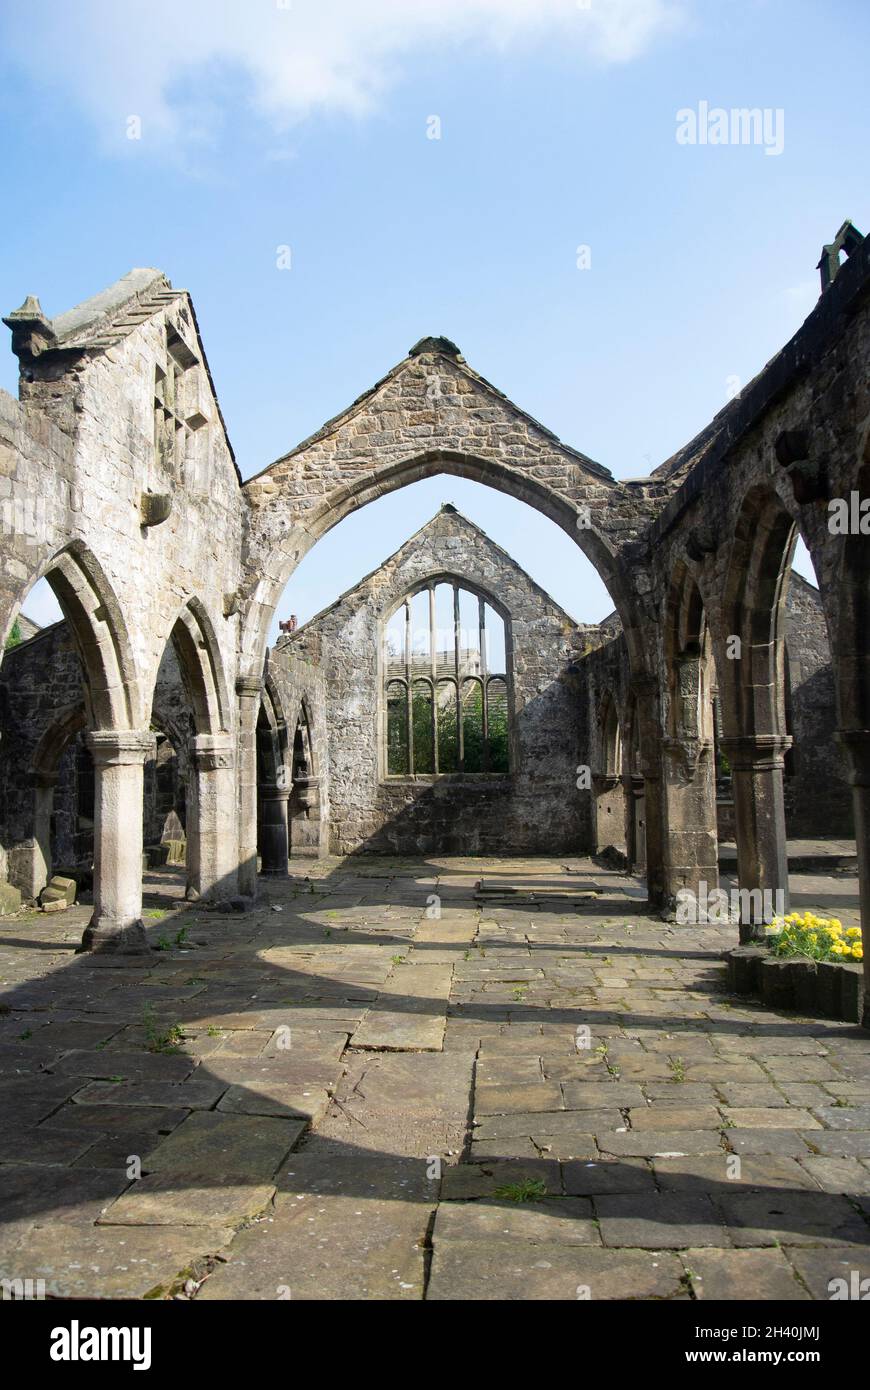 Heptonstall, Yorkshire rovine della storica chiesa di San Tommaso nel cuore di questo piccolo villaggio affascinante foto verticale Foto Stock